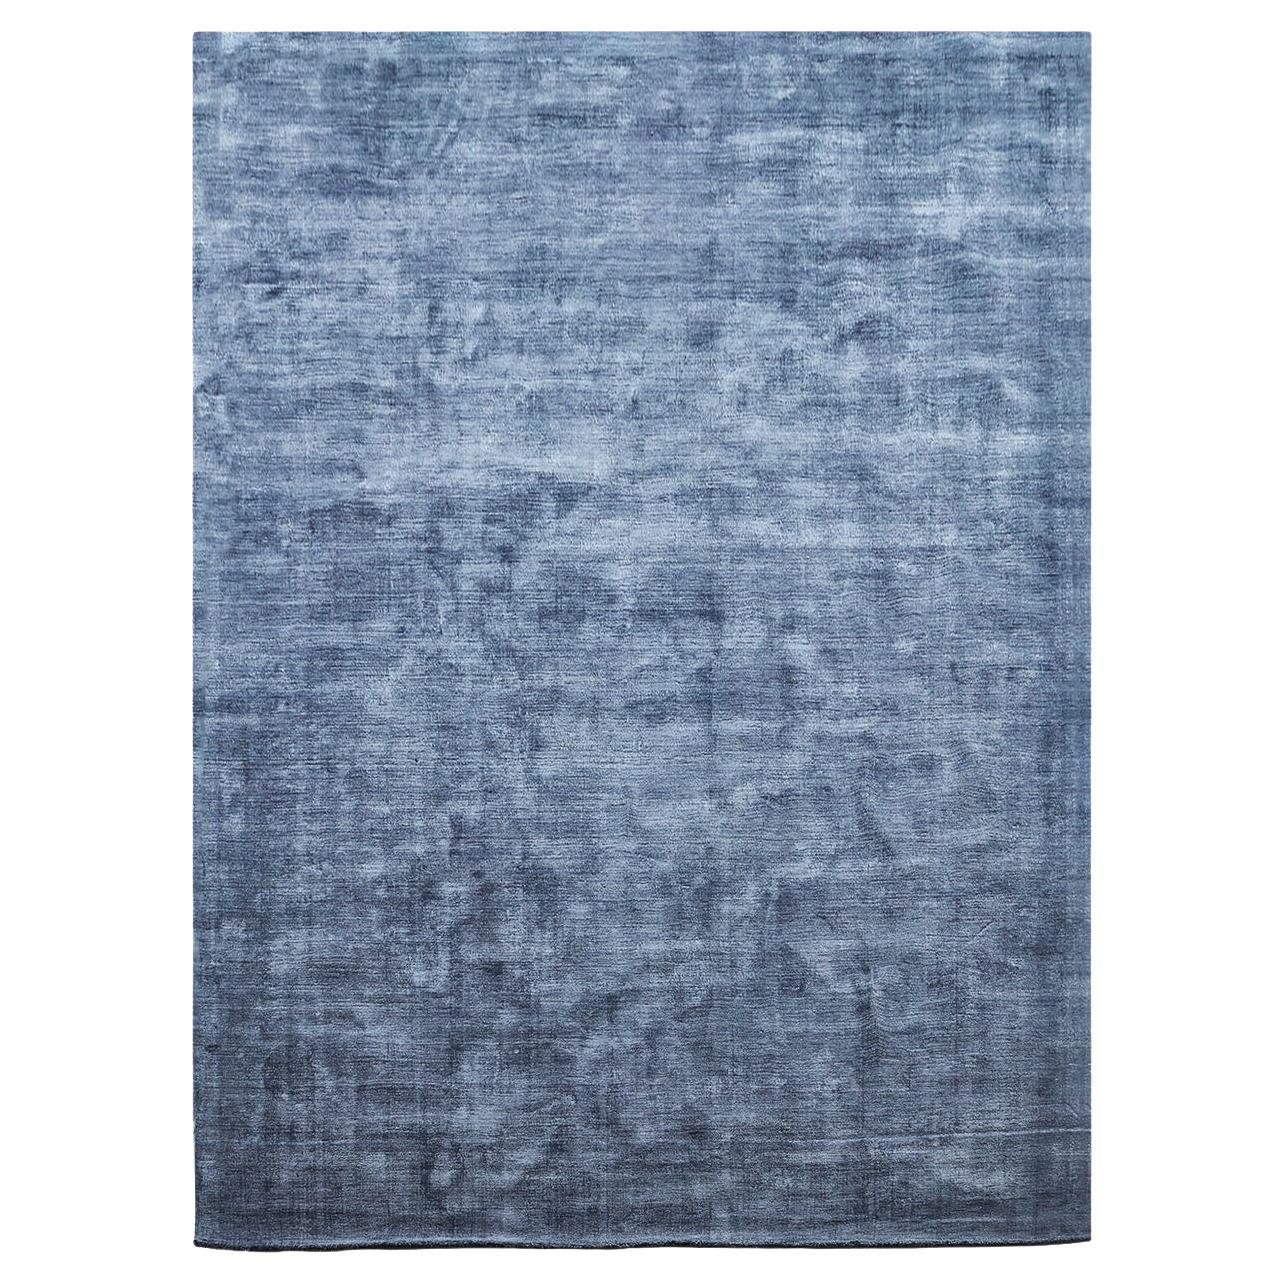 Ge gewaschener blauer Karma-Teppich von Massimo Copenhagen